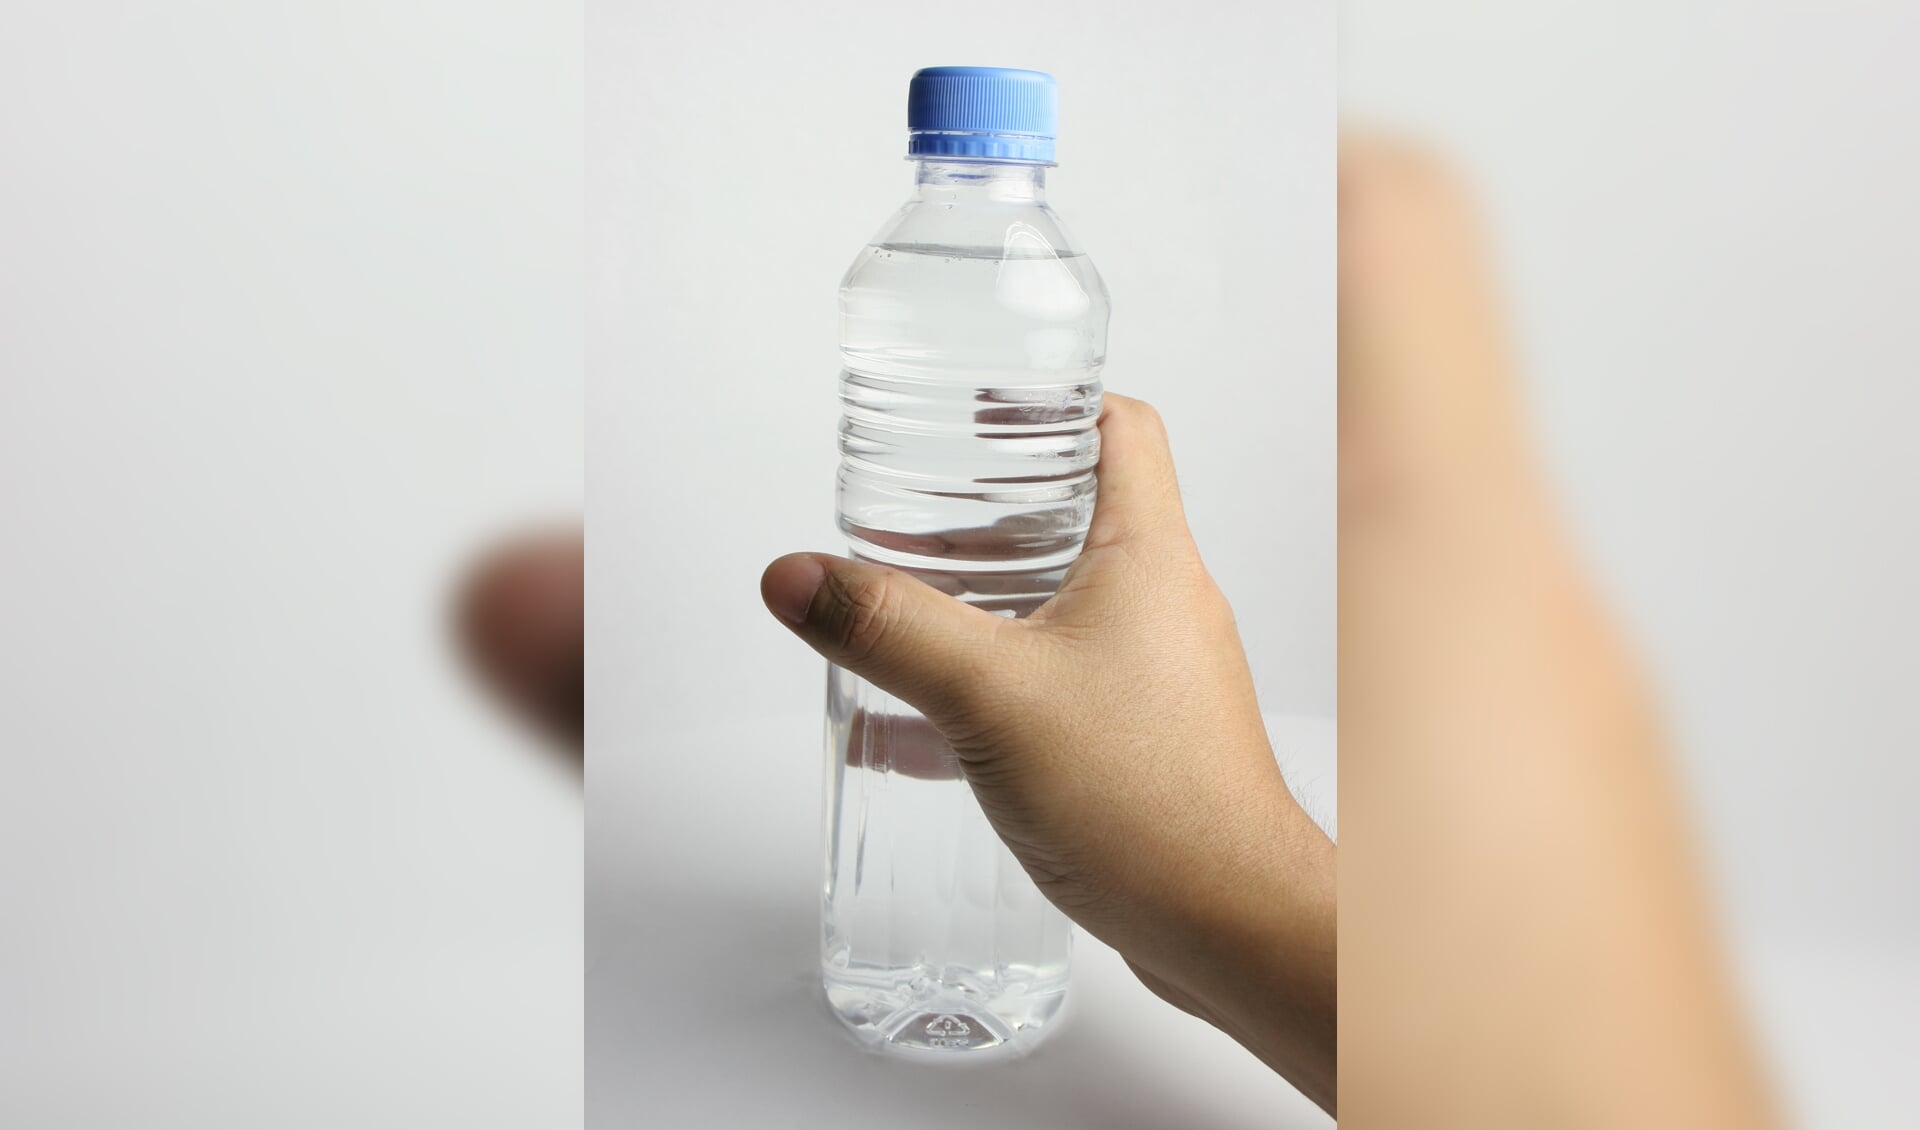 Eigenlijk zouden we dit met z'n allen niet meer moeten willen gebruiken: plastic flesjes. En als je het dan toch gebruikt, dan is recyclen een must. 